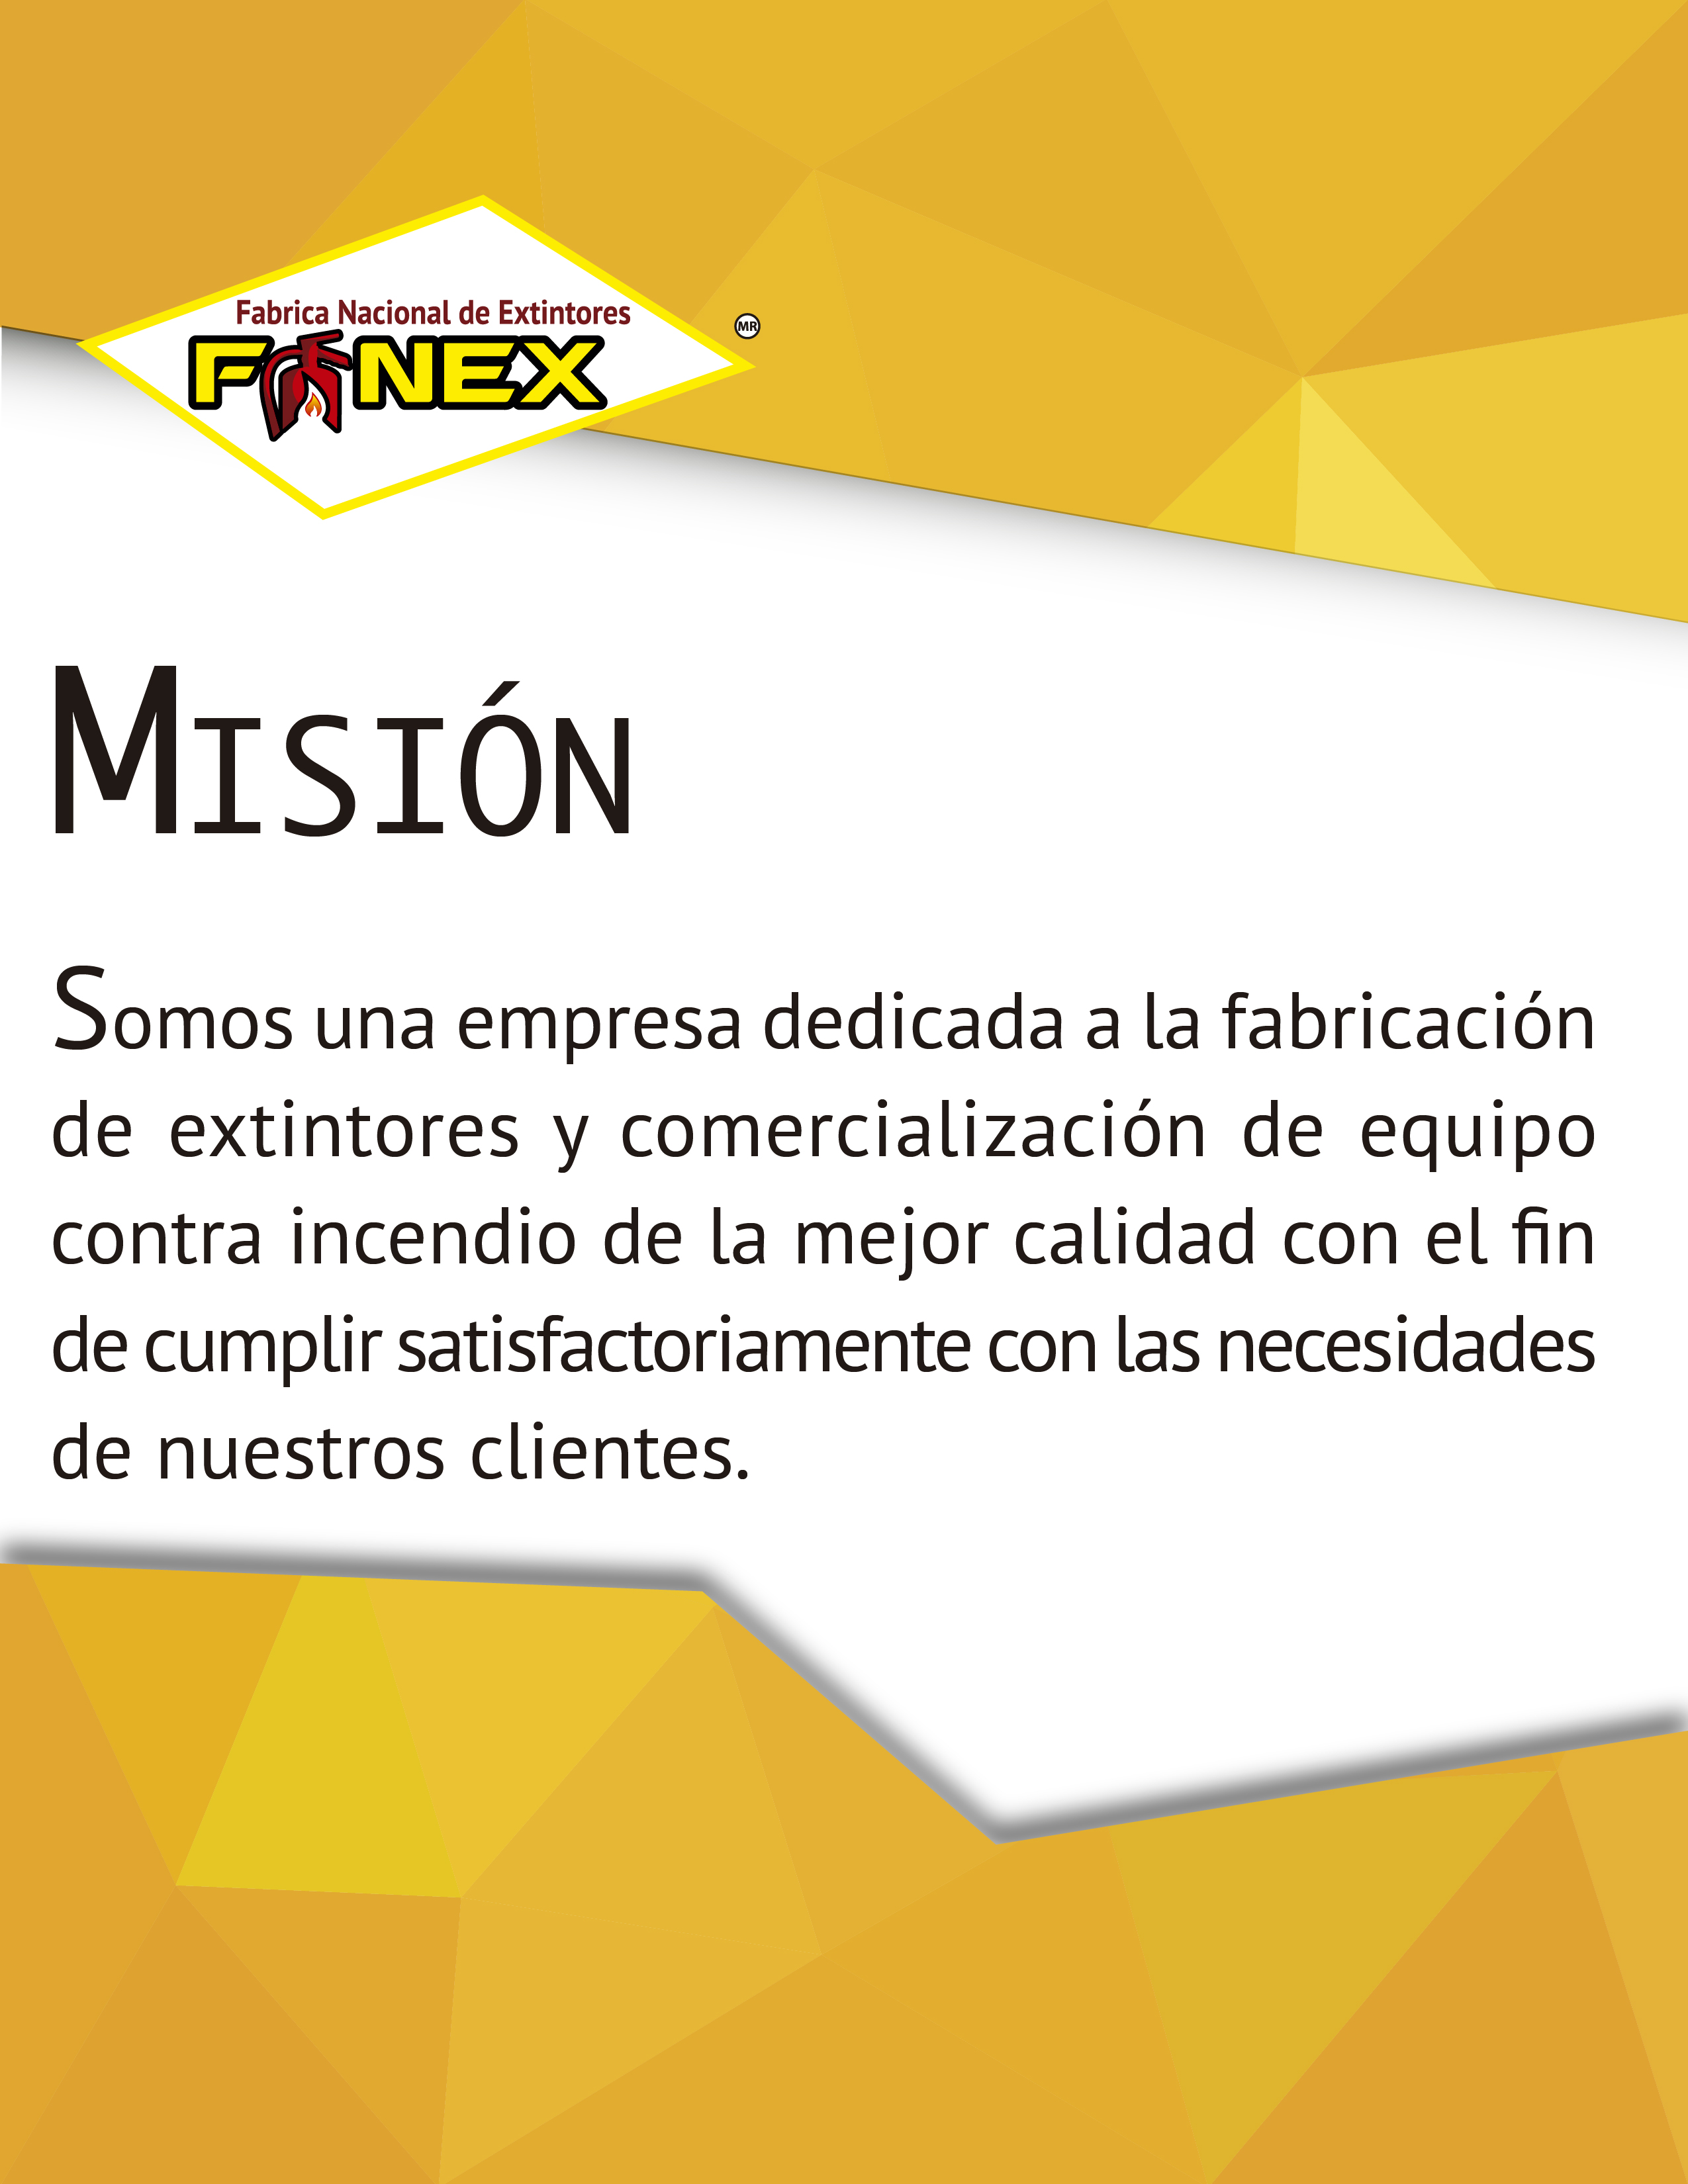 Misión FANEX